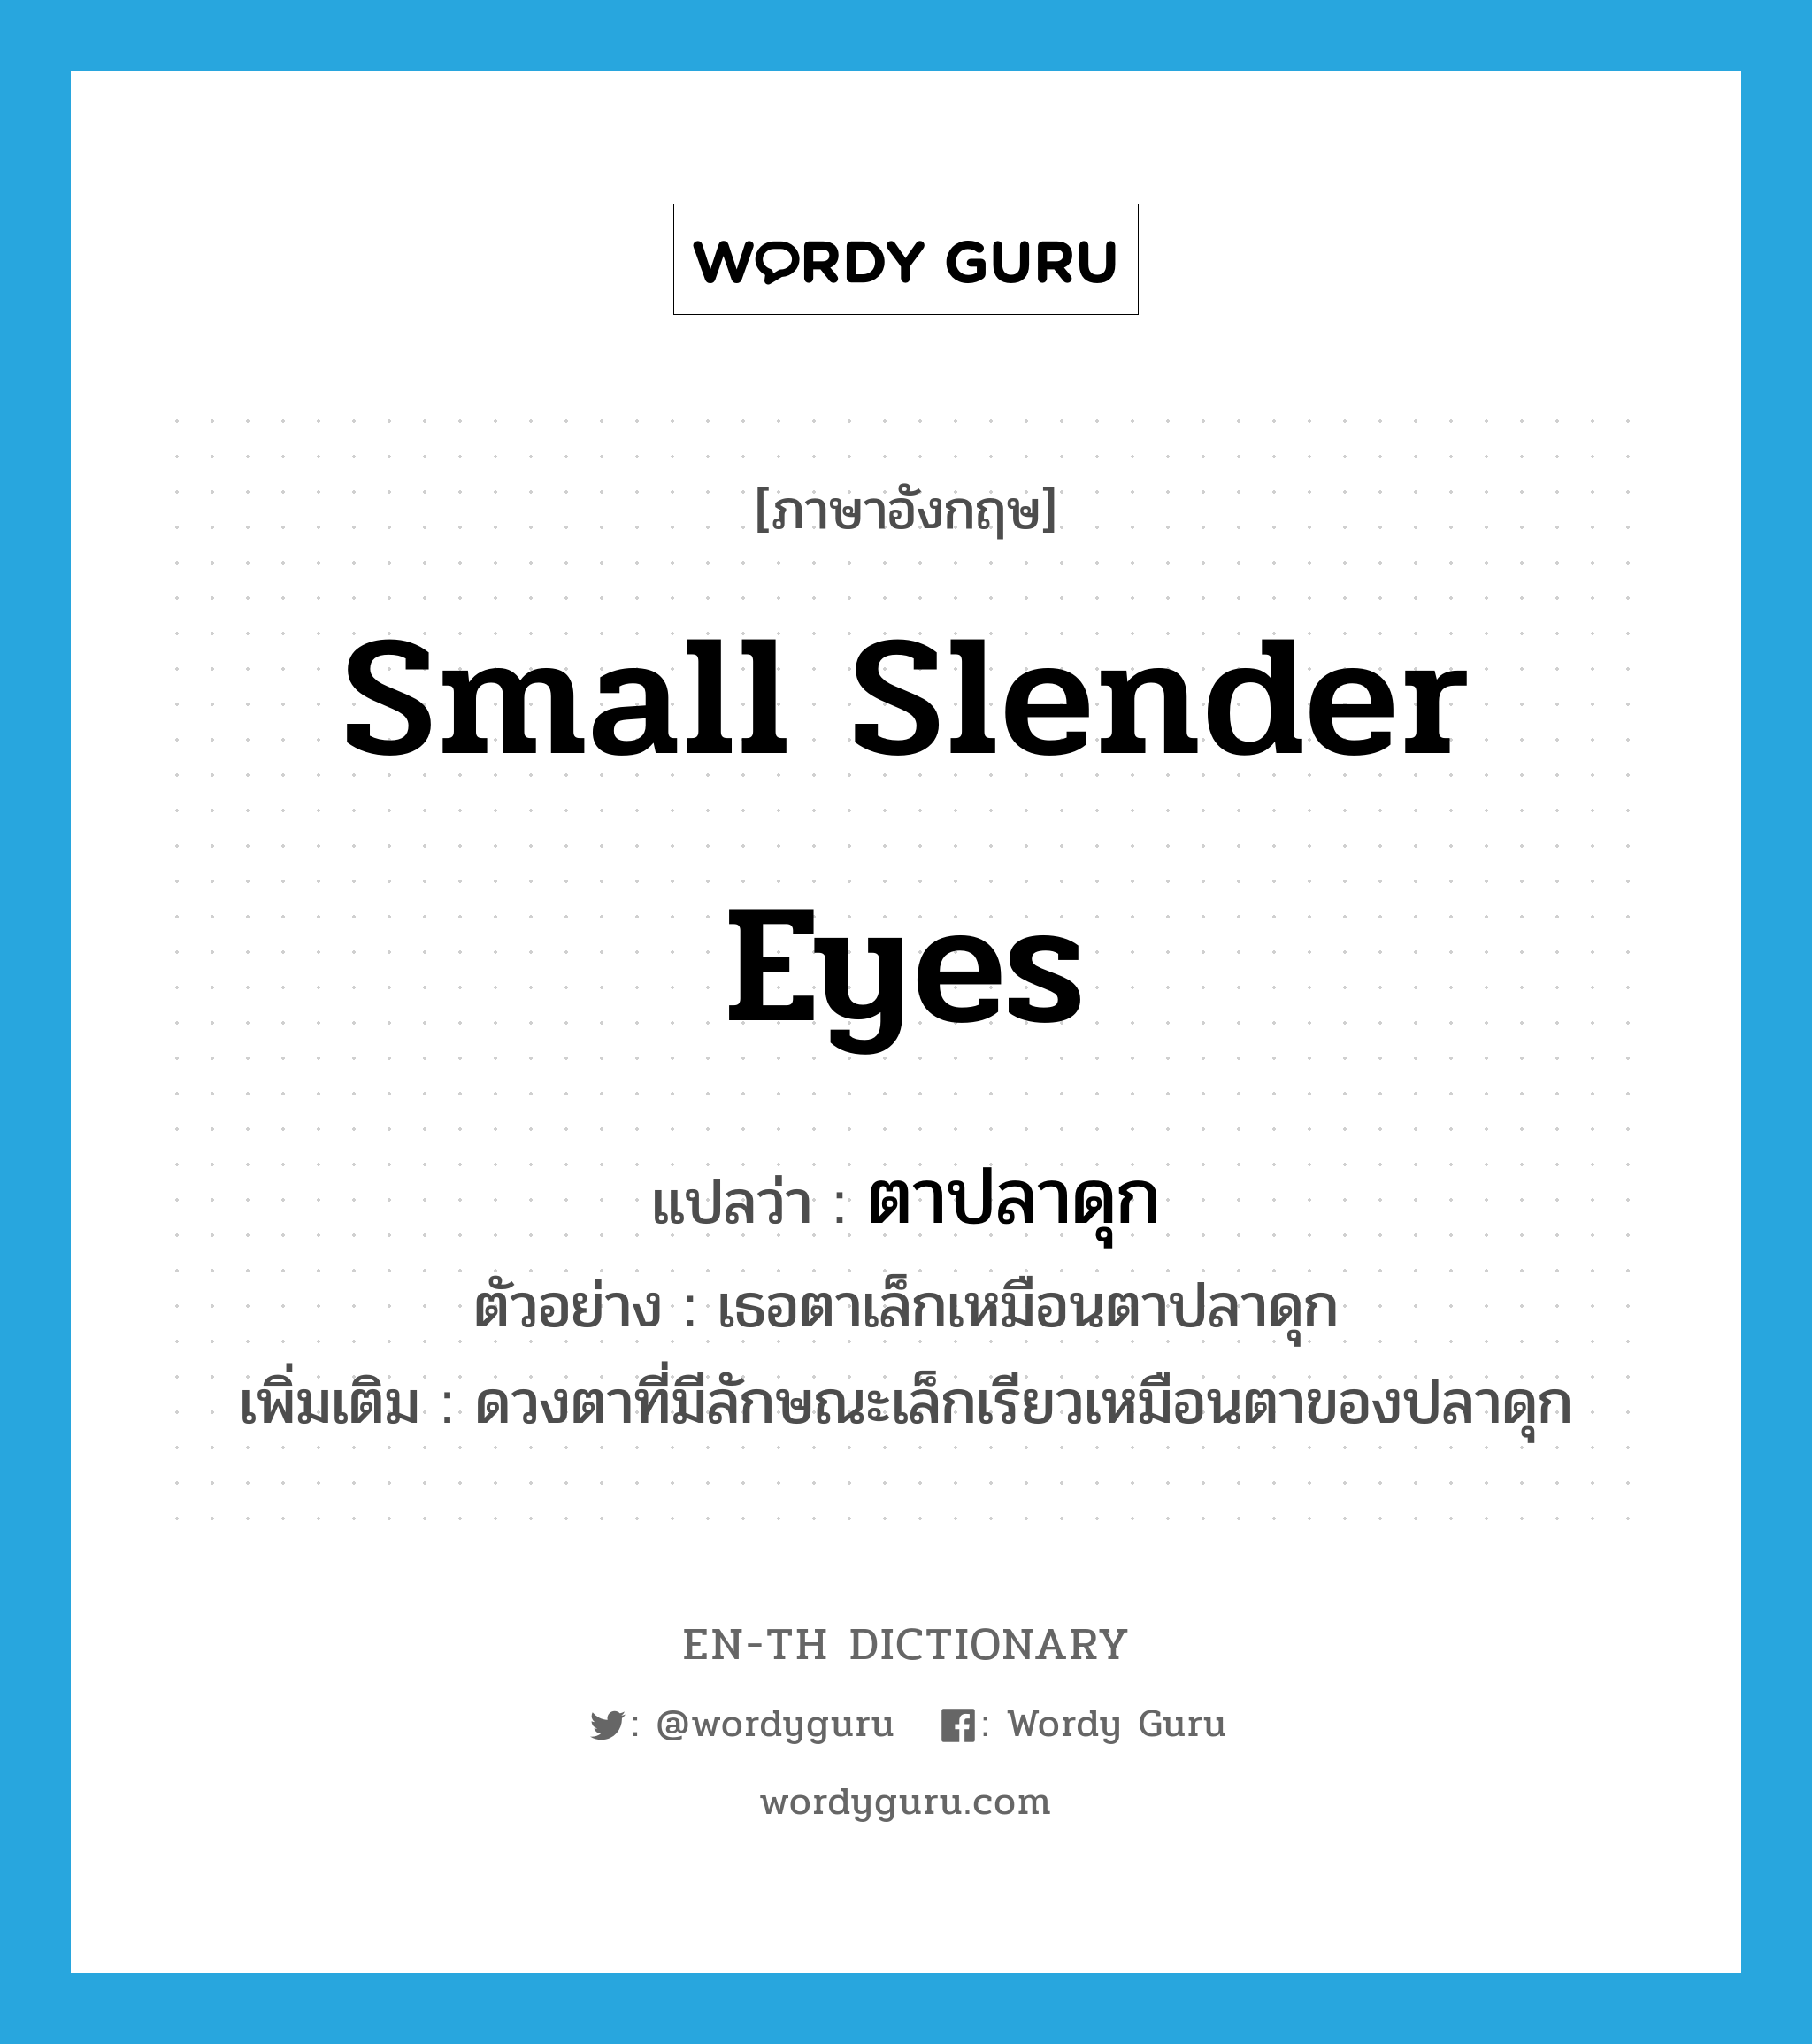 small slender eyes แปลว่า?, คำศัพท์ภาษาอังกฤษ small slender eyes แปลว่า ตาปลาดุก ประเภท N ตัวอย่าง เธอตาเล็กเหมือนตาปลาดุก เพิ่มเติม ดวงตาที่มีลักษณะเล็กเรียวเหมือนตาของปลาดุก หมวด N